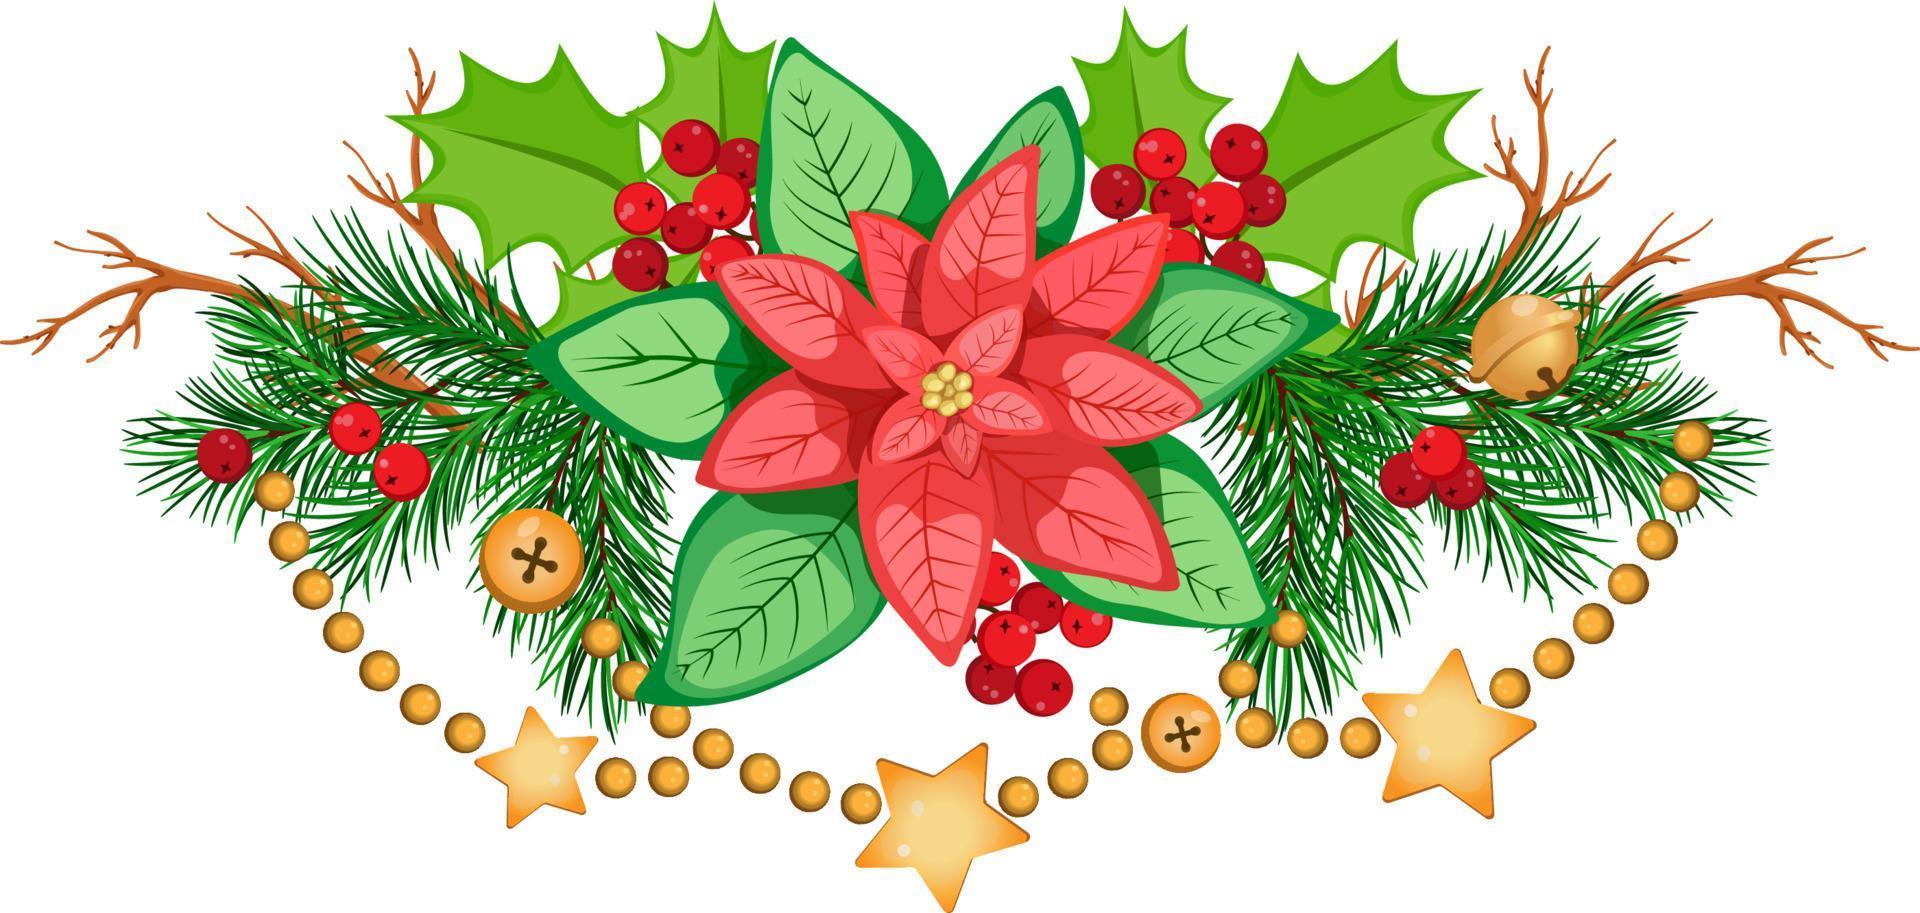 composição de natal com poinsétia, ramos de abeto, com azevinho, ramos, bagas e guirlanda dourada. vetor